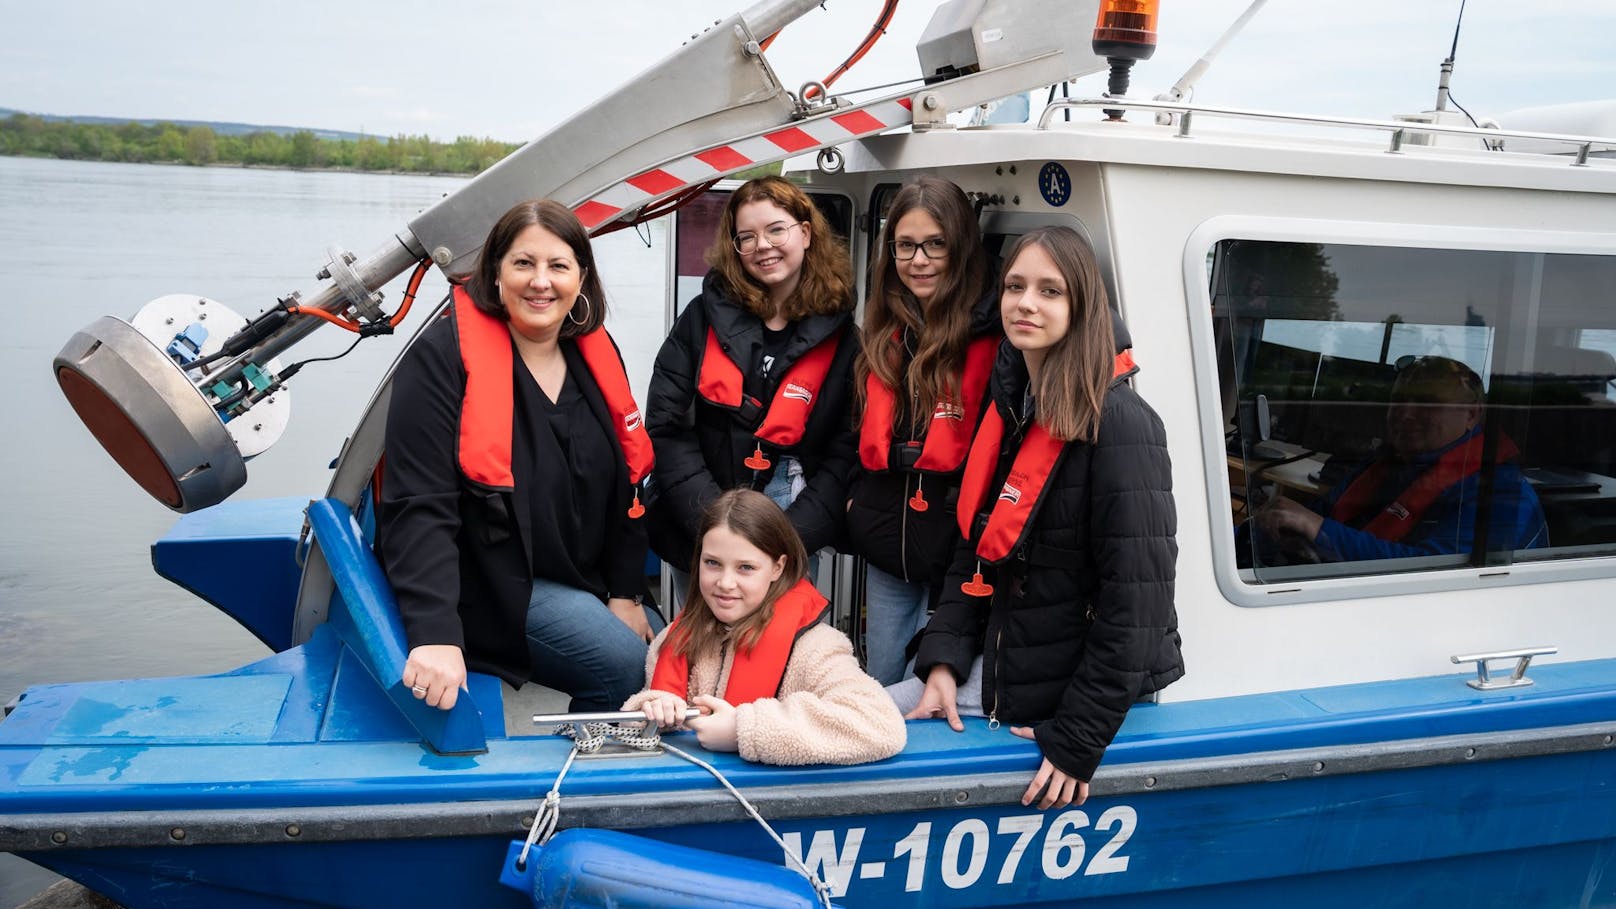 2023 war Vizebürgermeisterin Kathrin Gaál zu Besuch bei der viadonau – Österreichische Wasserstraßen-Gesellschaft mbH und fuhr gemeinsam mit den teilnehmenden Mädchen mit einem Vermessungsboot auf der Donau.